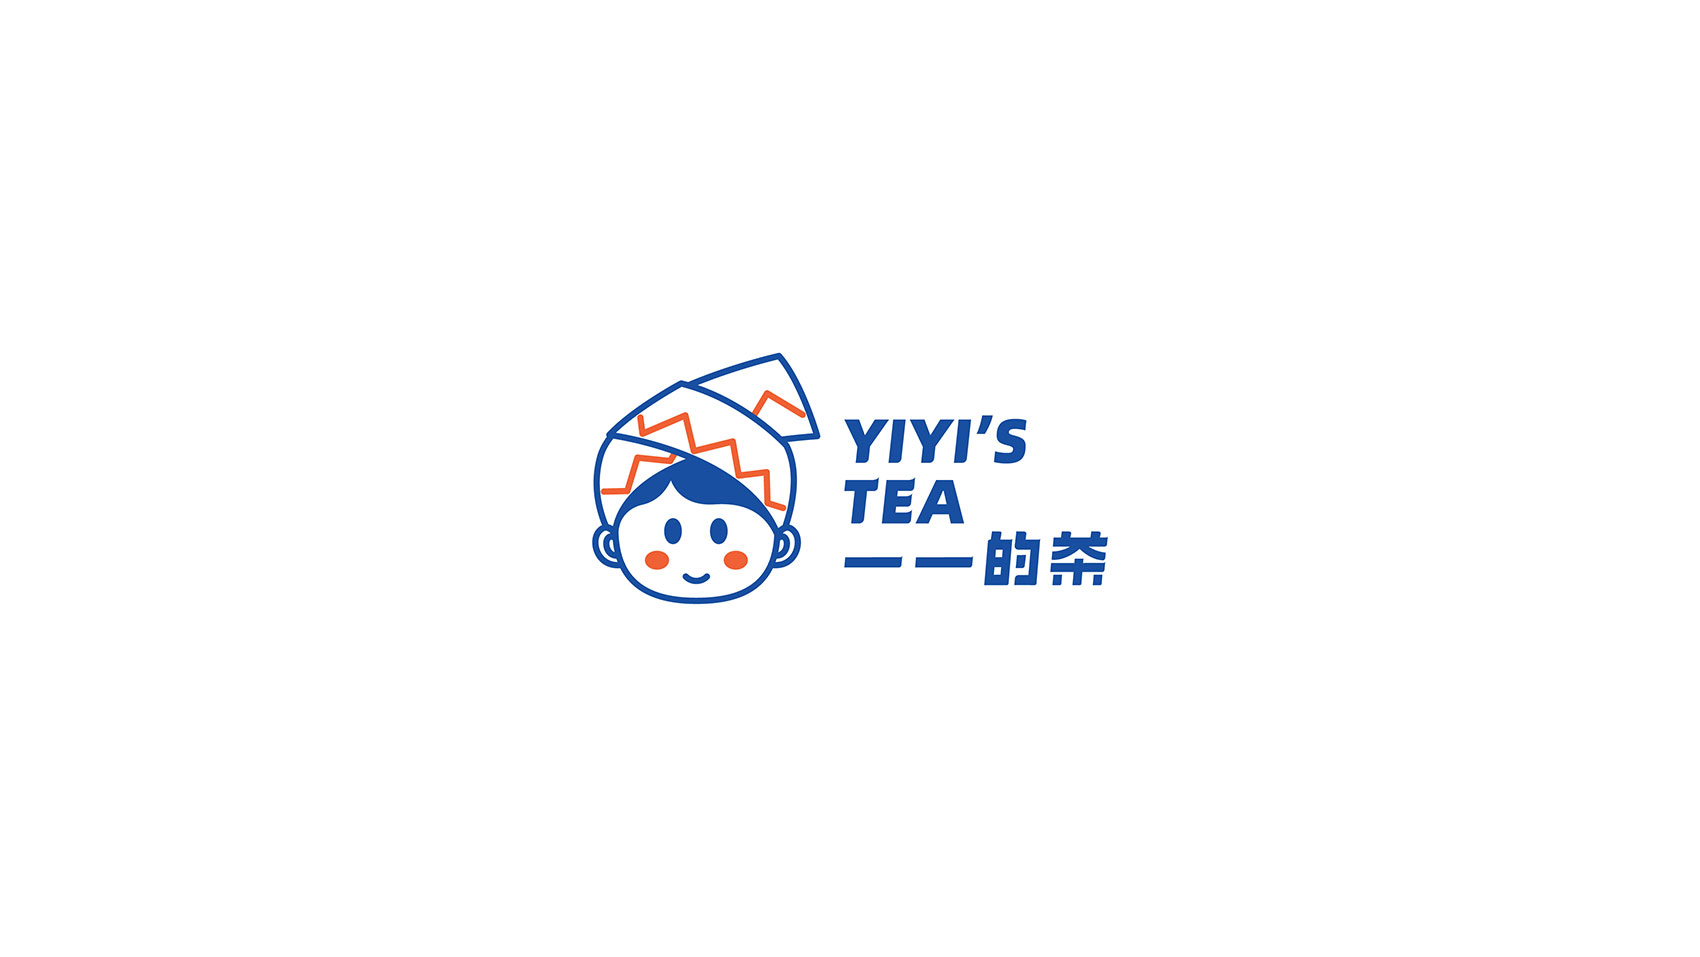 一一的茶  北京餐饮logo设计 餐饮VI设计 插画设计  品牌VI设计  北京品牌VI设计公司 北京品牌VI设计 北京VI设计公司 北京品牌设计公司 北京VI设计 北京品牌设计